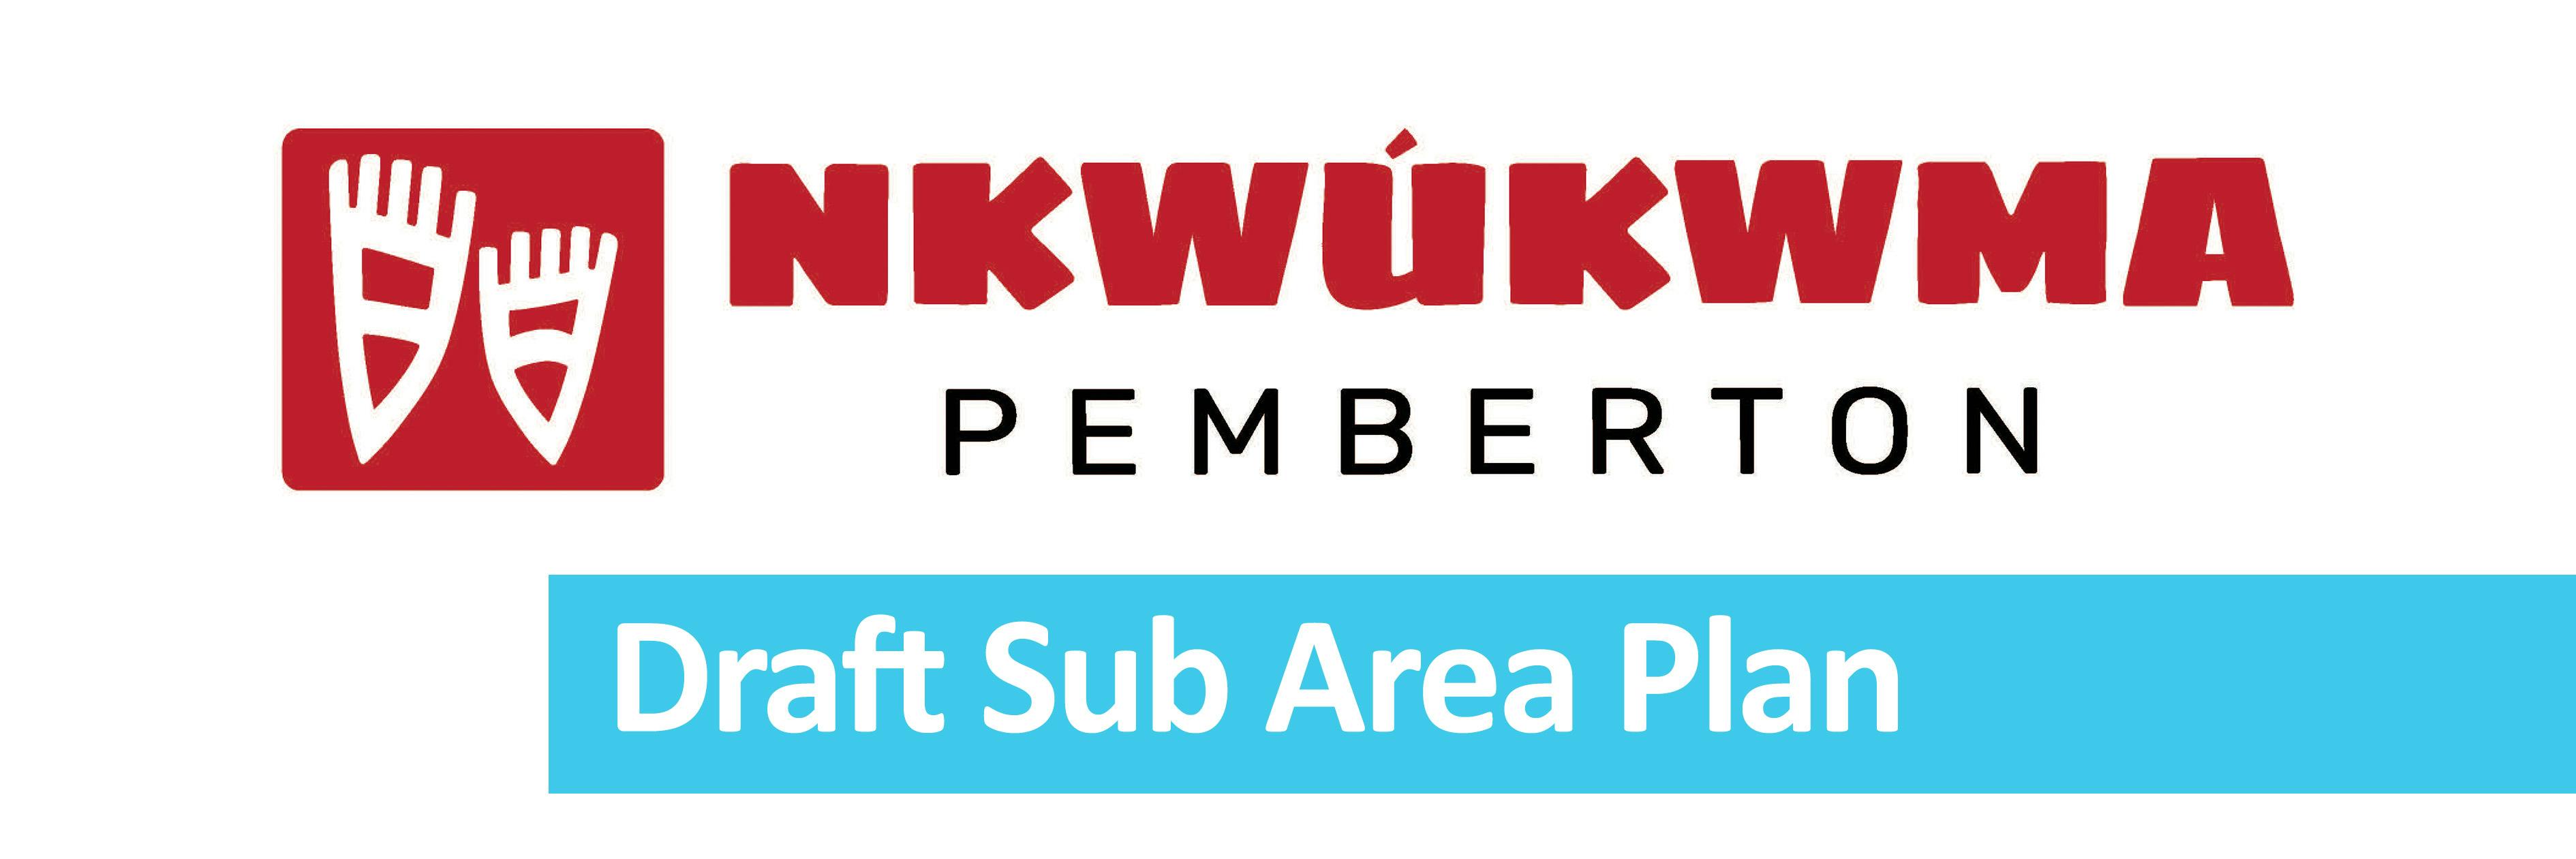 Nkwukwma Logo